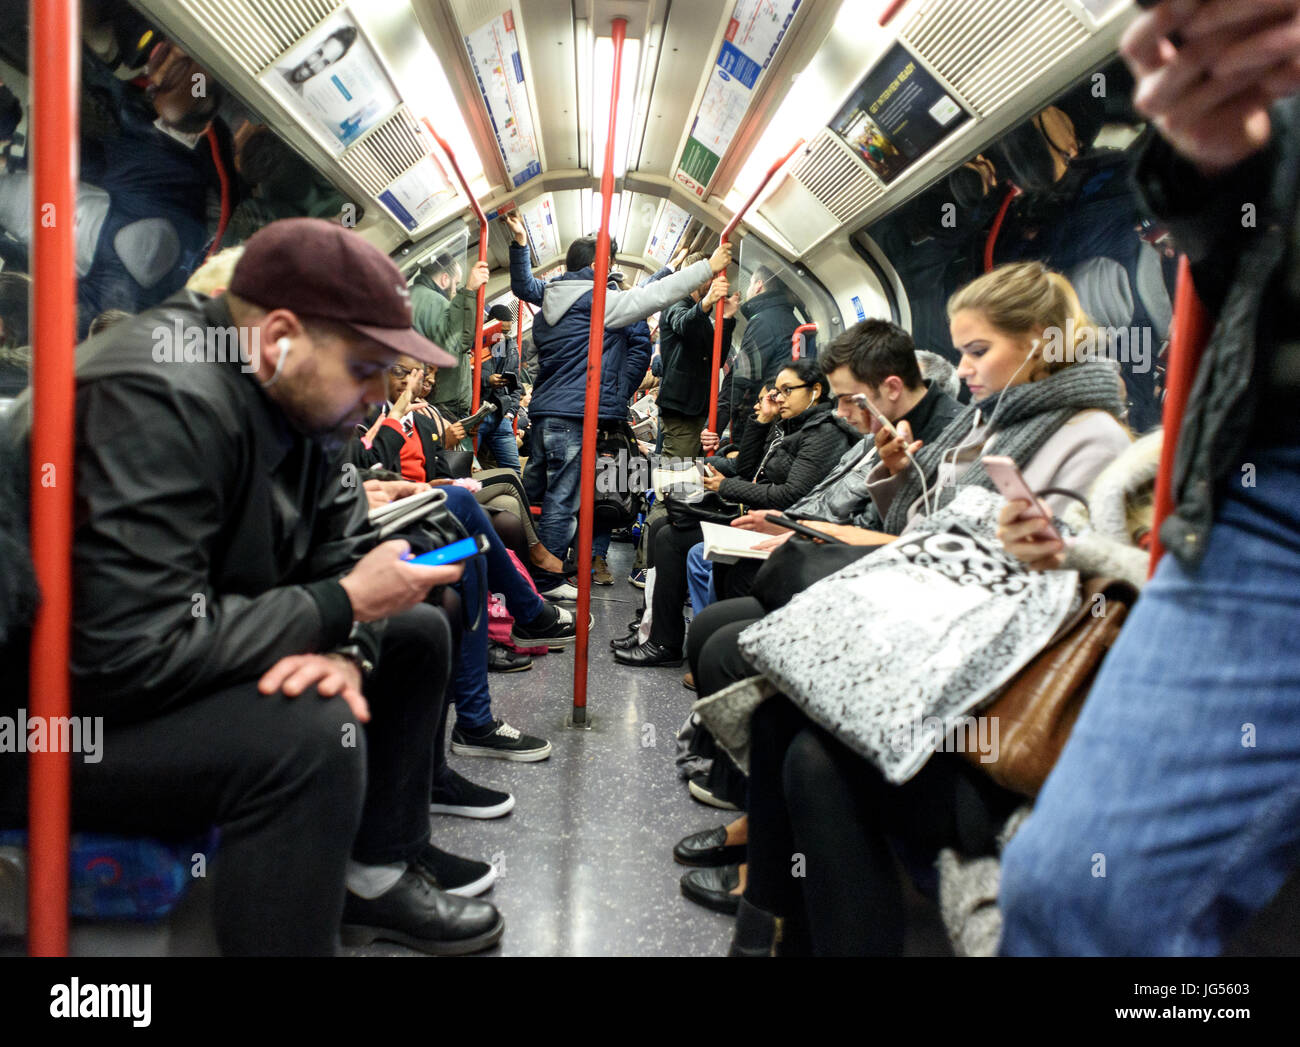 Diversos grupos mezclados cabalgando sobre un tren de Metro de Londres en sus vagones tanto sentado y de pie Foto de stock